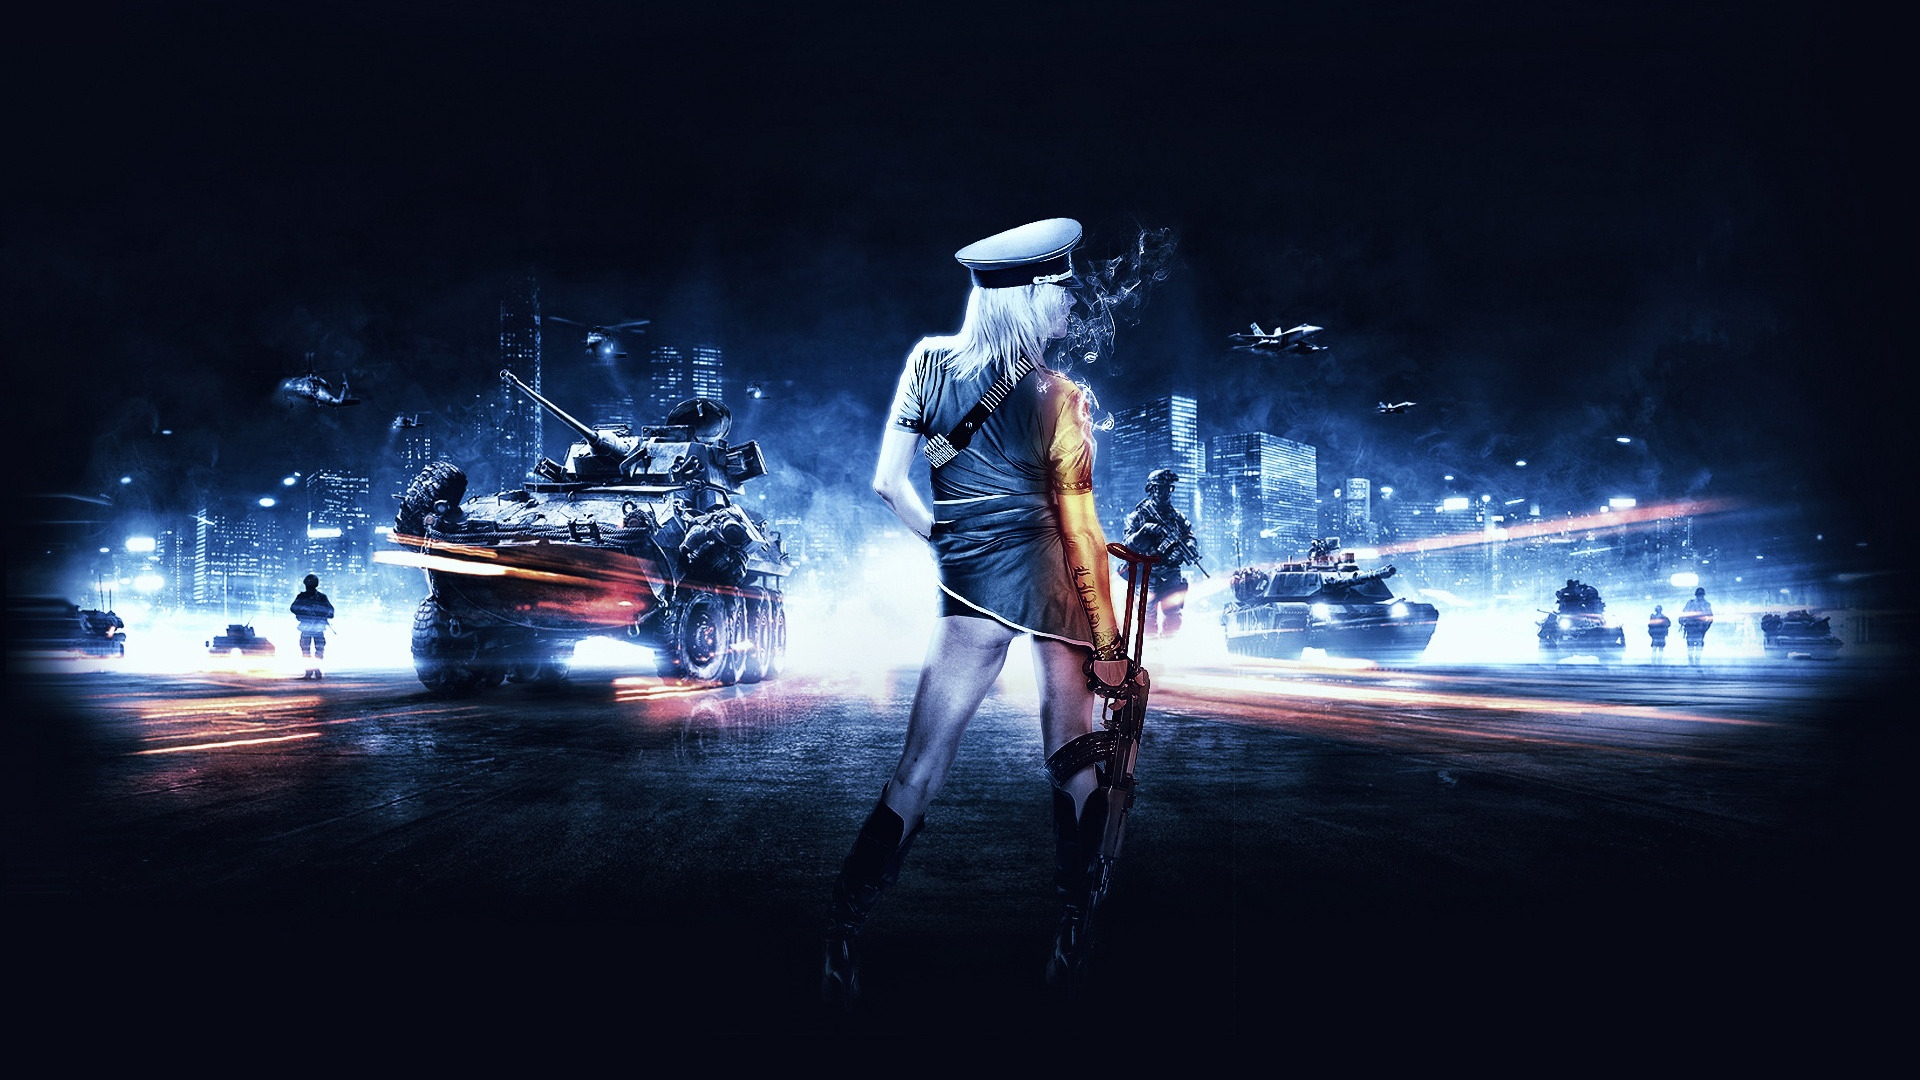 Battlefield 3 Girl for 1920 x 1080 HDTV 1080p resolution